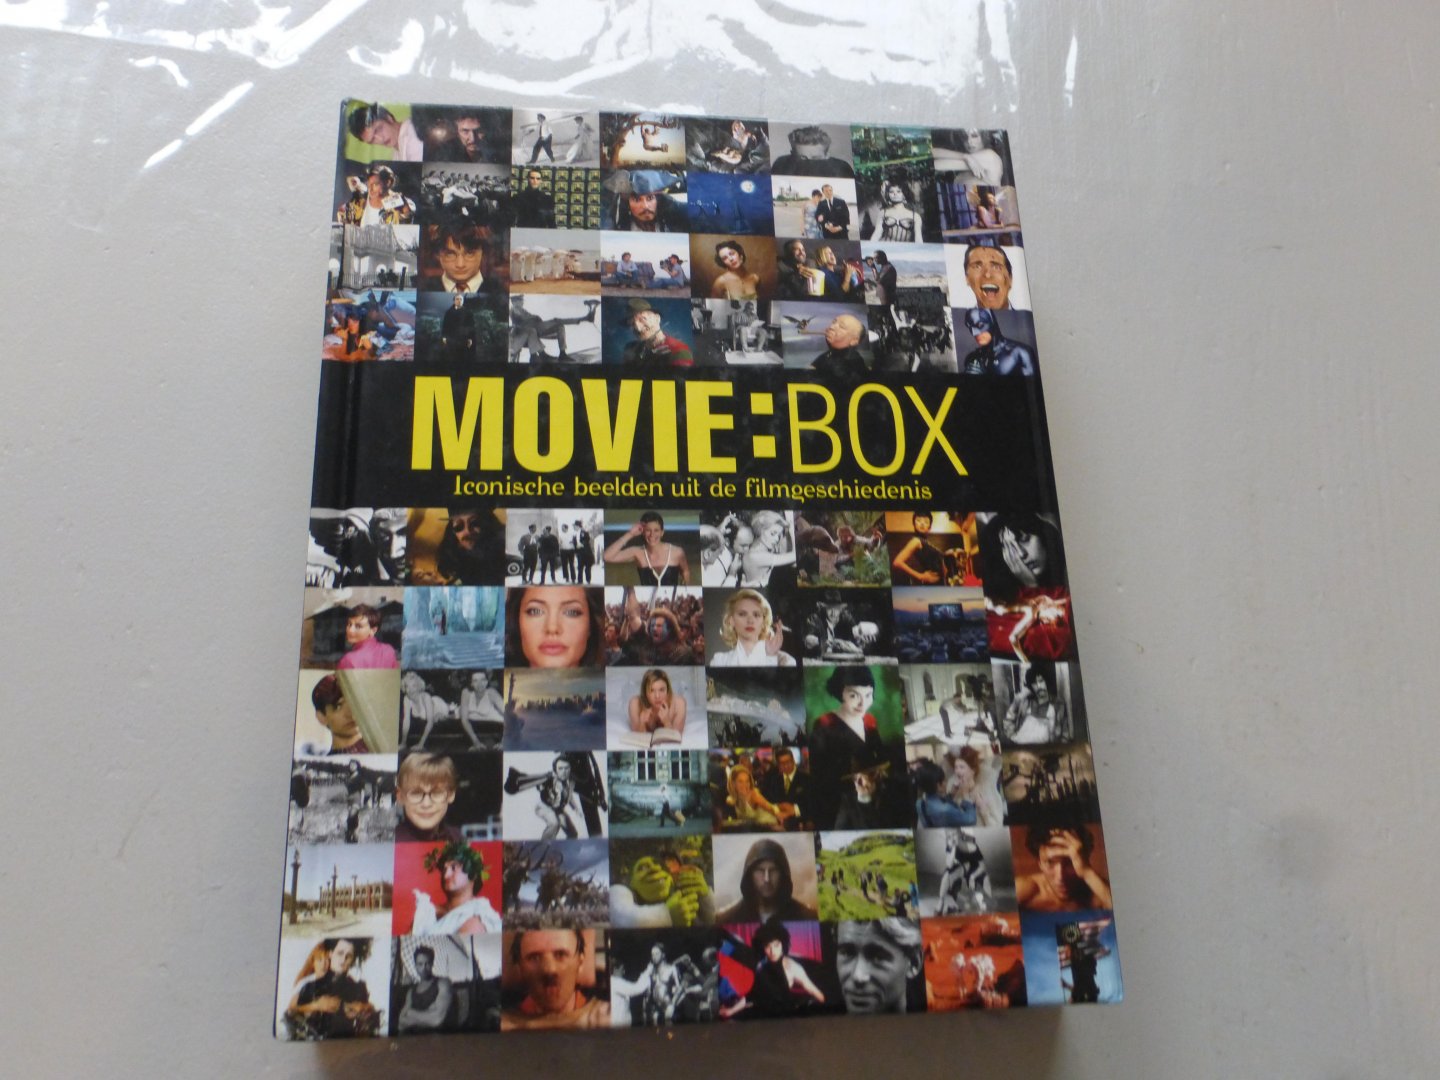 Mereghetti, Paolo, Mauro, Alessandra, Bartolomeis, Franca de, Tagliaventi, Alessia - MOVIE:BOX / iconische beelden uit de filmgeschiedenis